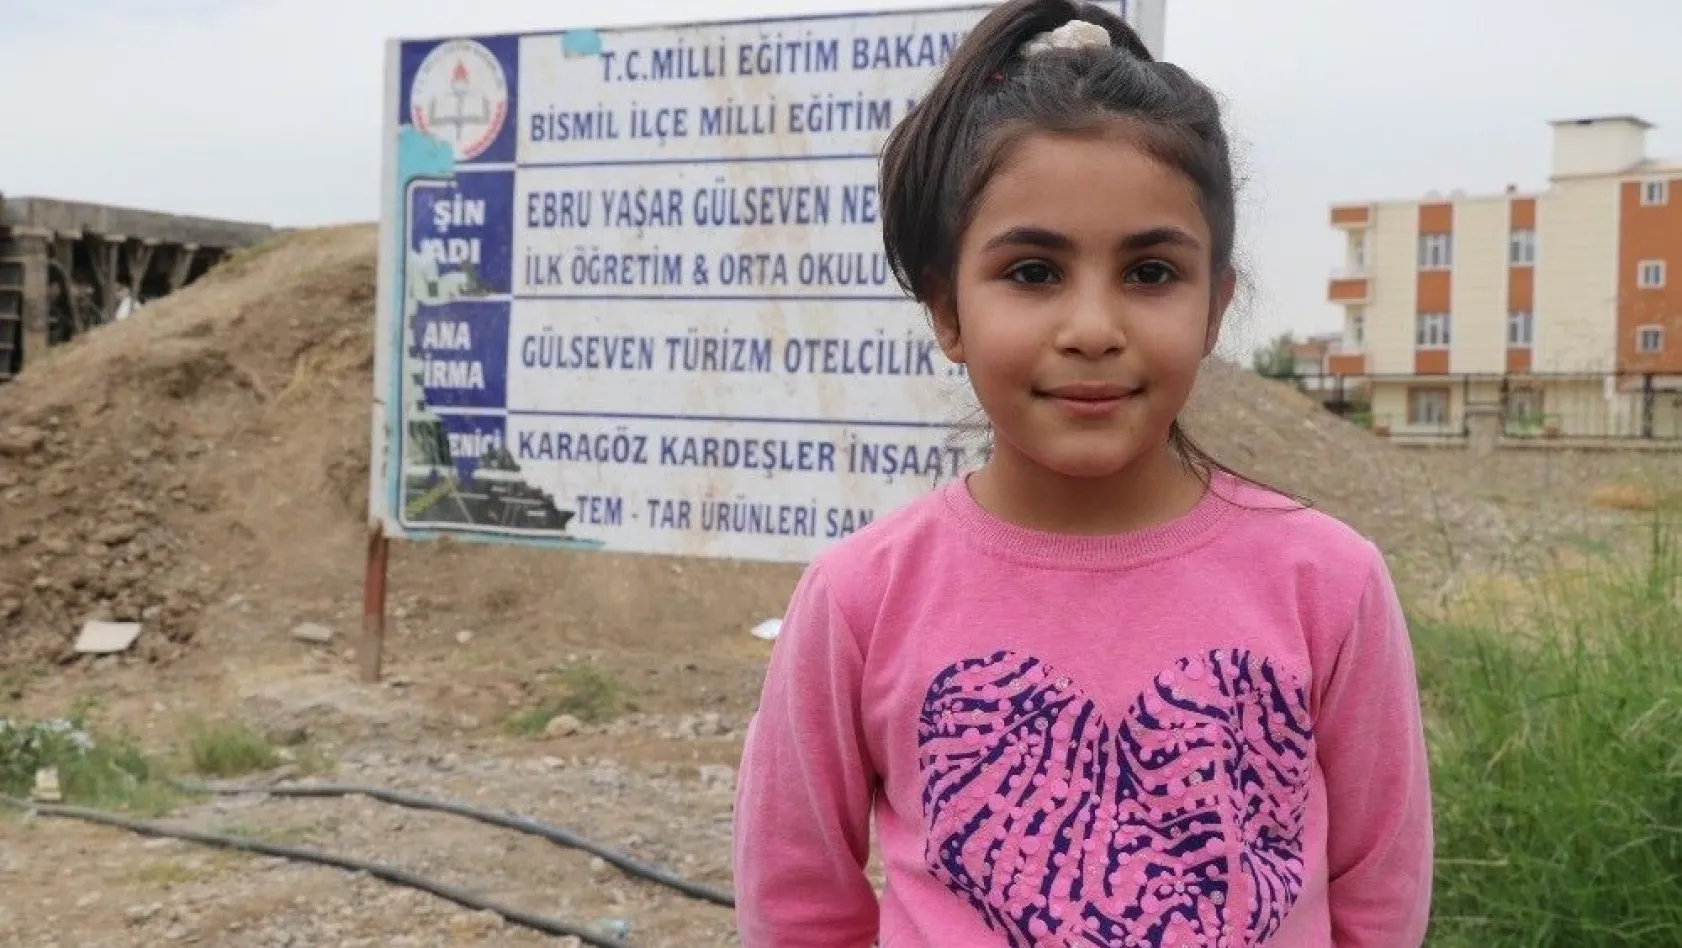 Minik kız okul için mektup yazdı, Ebru Yaşar Gülseven ağladı
